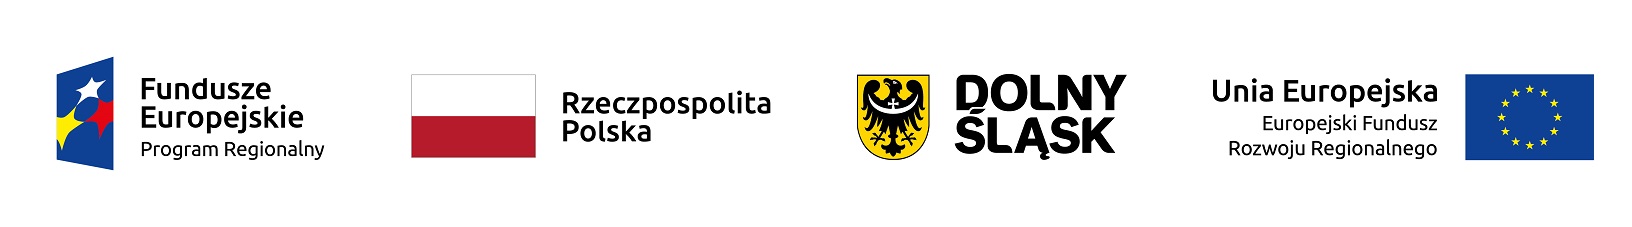 logotypy: Fundusze Europejskie Program Regionalny, herb Dolnego Śląska, flaga RP, flaga UE